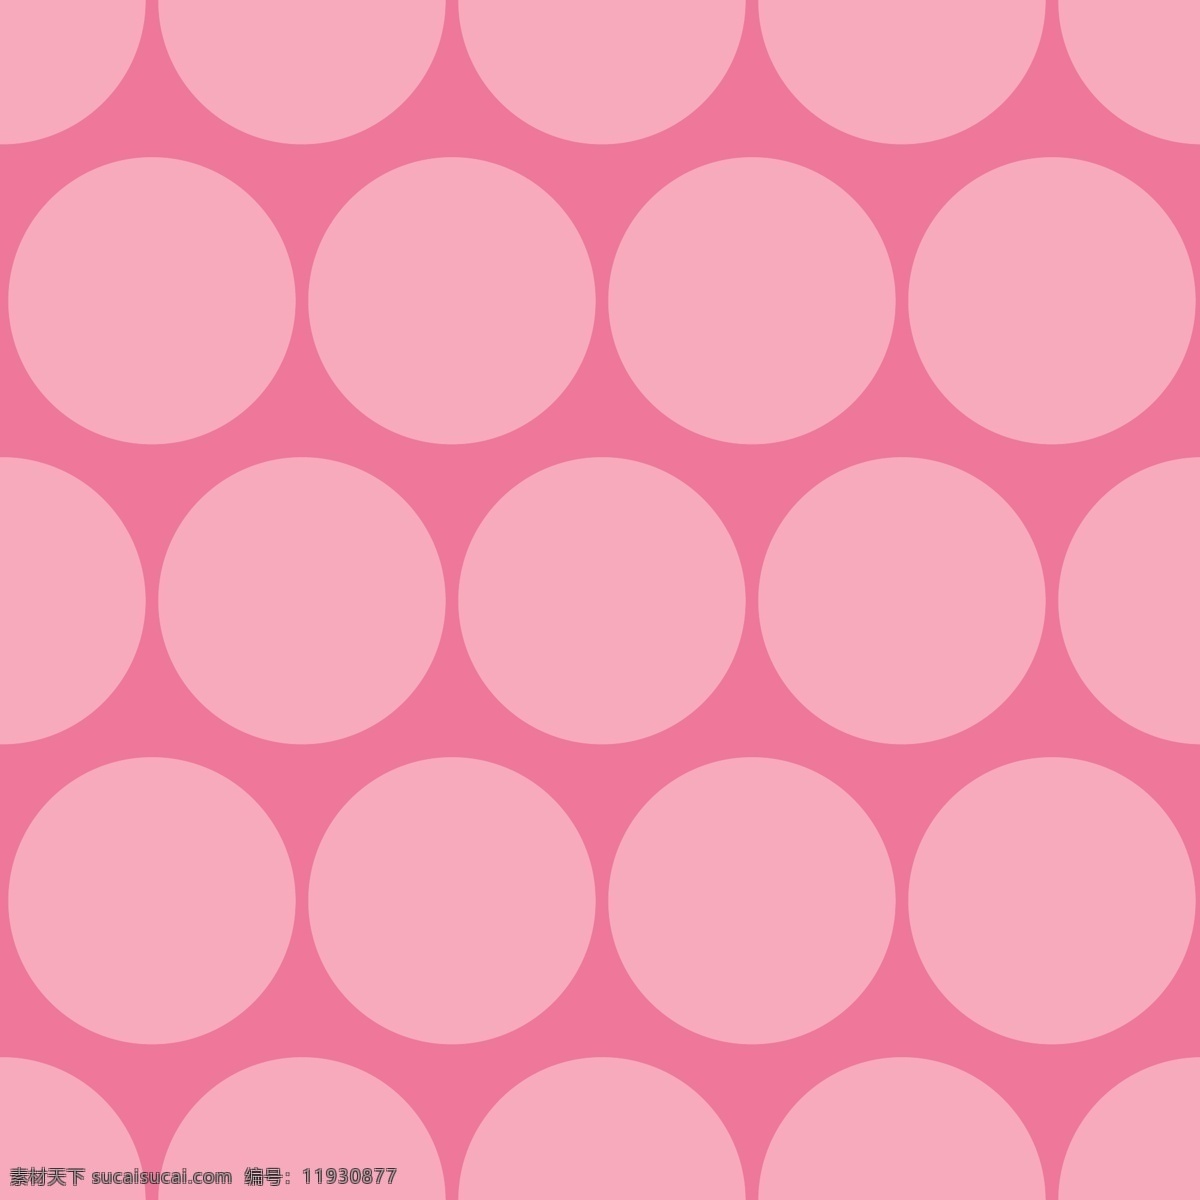 少女 心 粉色 波 点 背景 填充 圆形 圆点 简单 矢量素材 设计素材 粉红色 平面素材